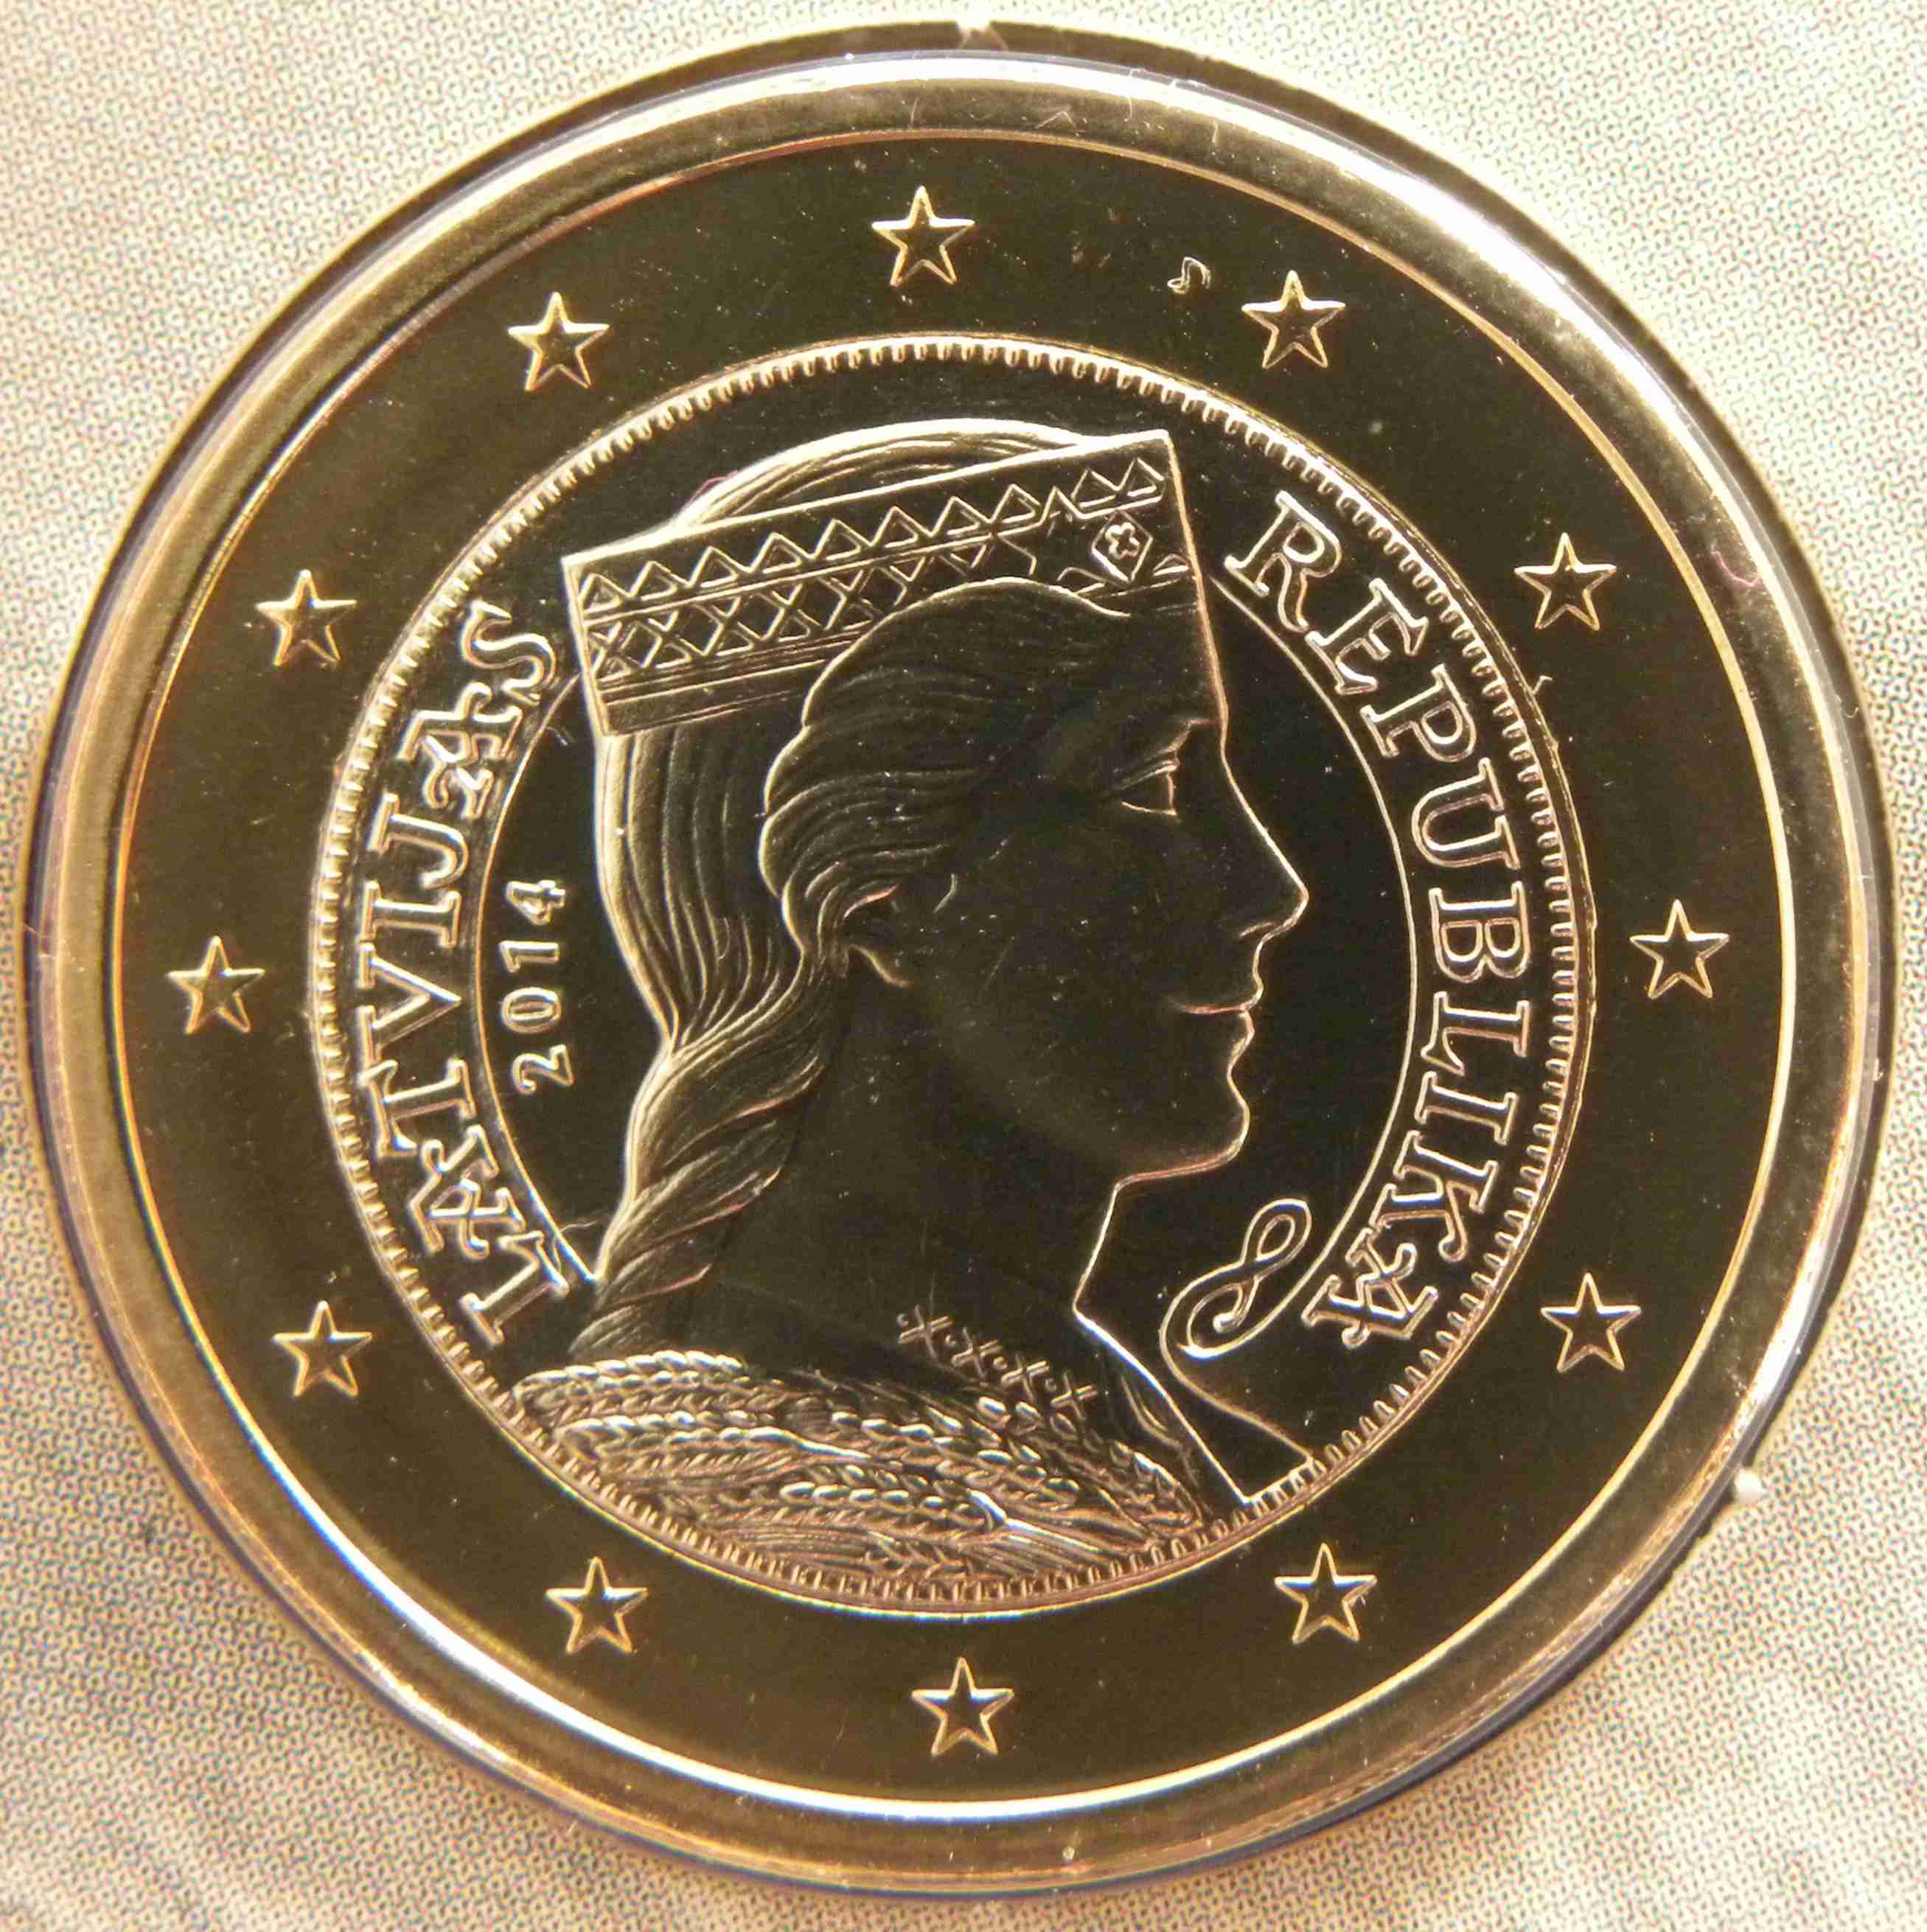 Lettland 1 Euro Münze 2014 - euro-muenzen.tv - Der Online Euromünzen